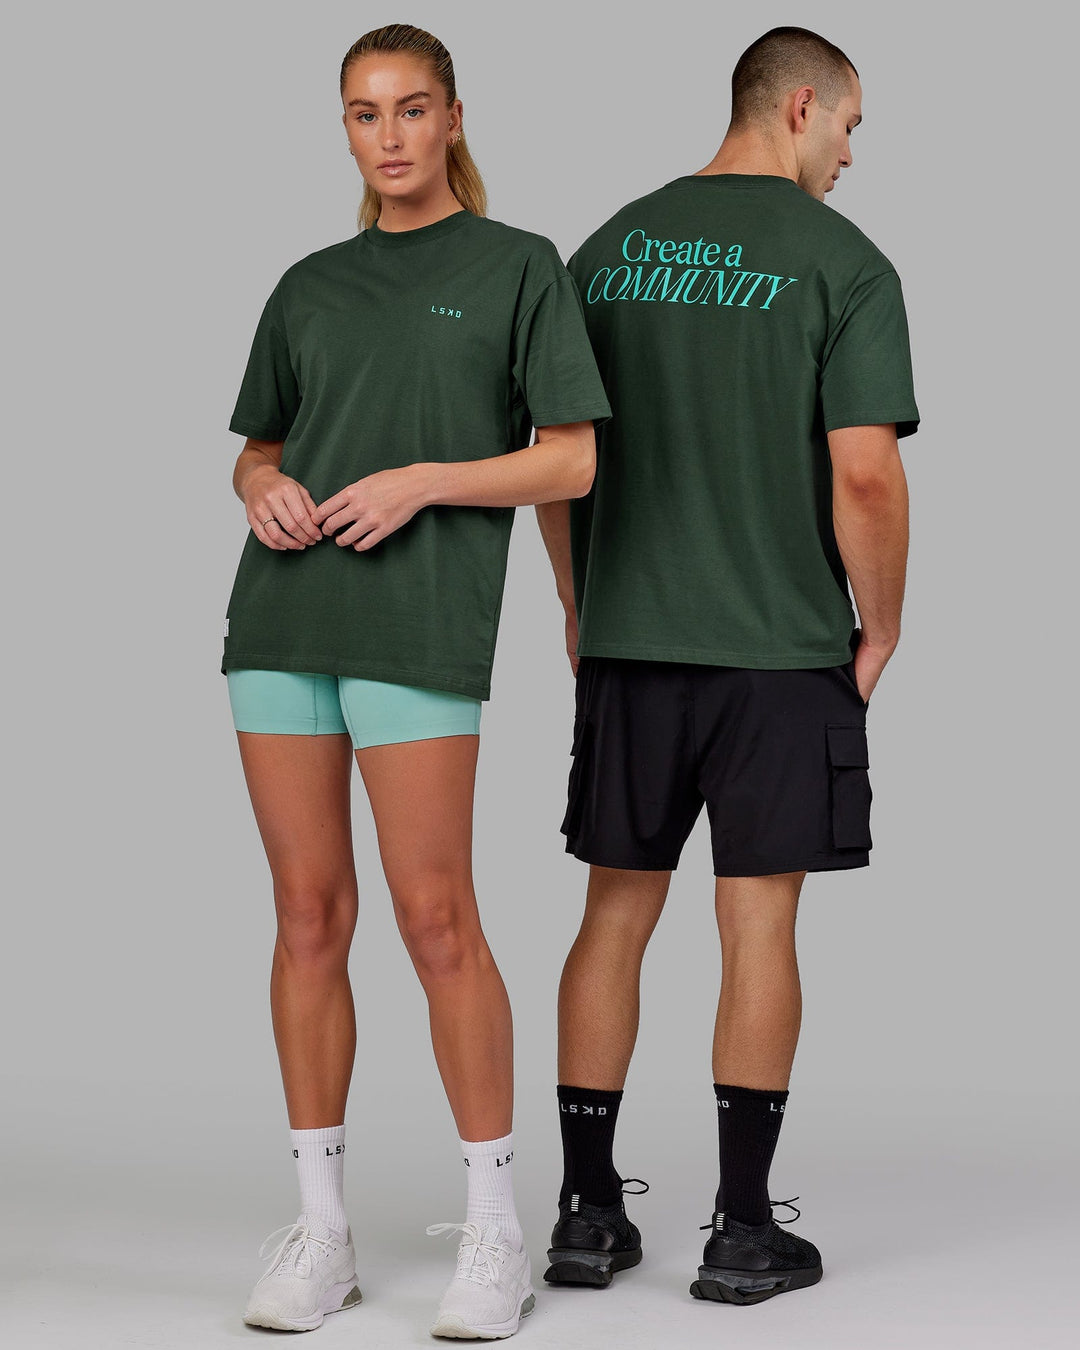 Duo wearing Unisex VS2 FLXCotton Tee Oversize - Vital Green-Teal